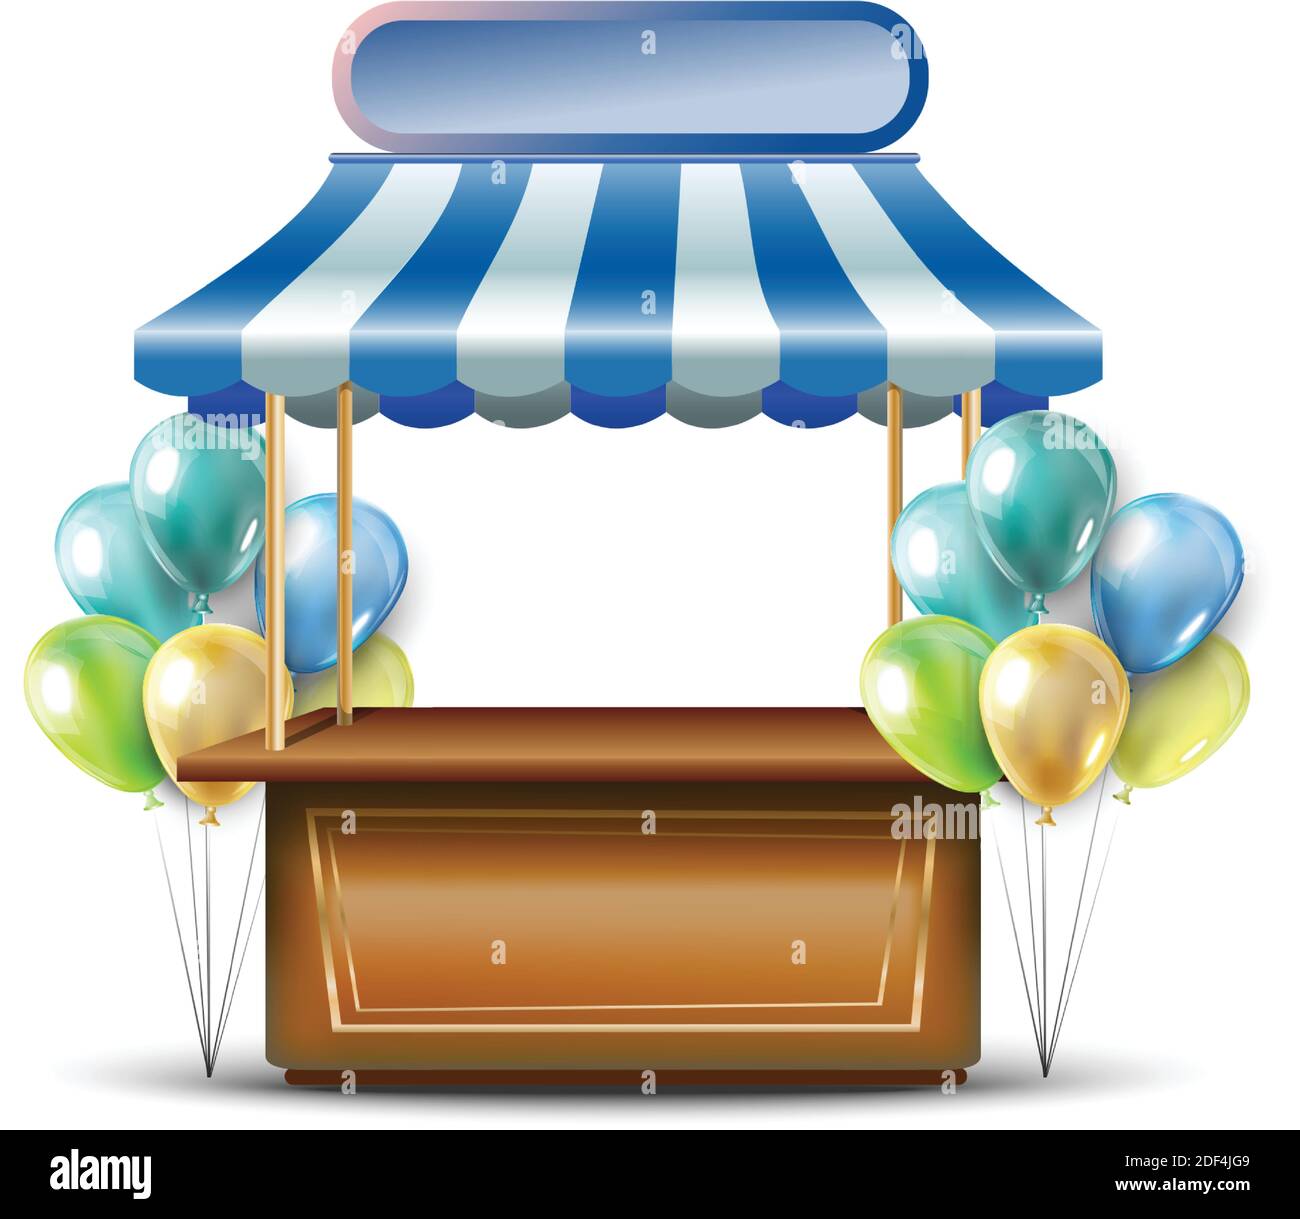 Isolierte Abbildung auf weißem Hintergrund. Feier Stand oder Kiosk mit vielen bunten Ballons und Schild für Ihren Text gibt. Stock Vektor